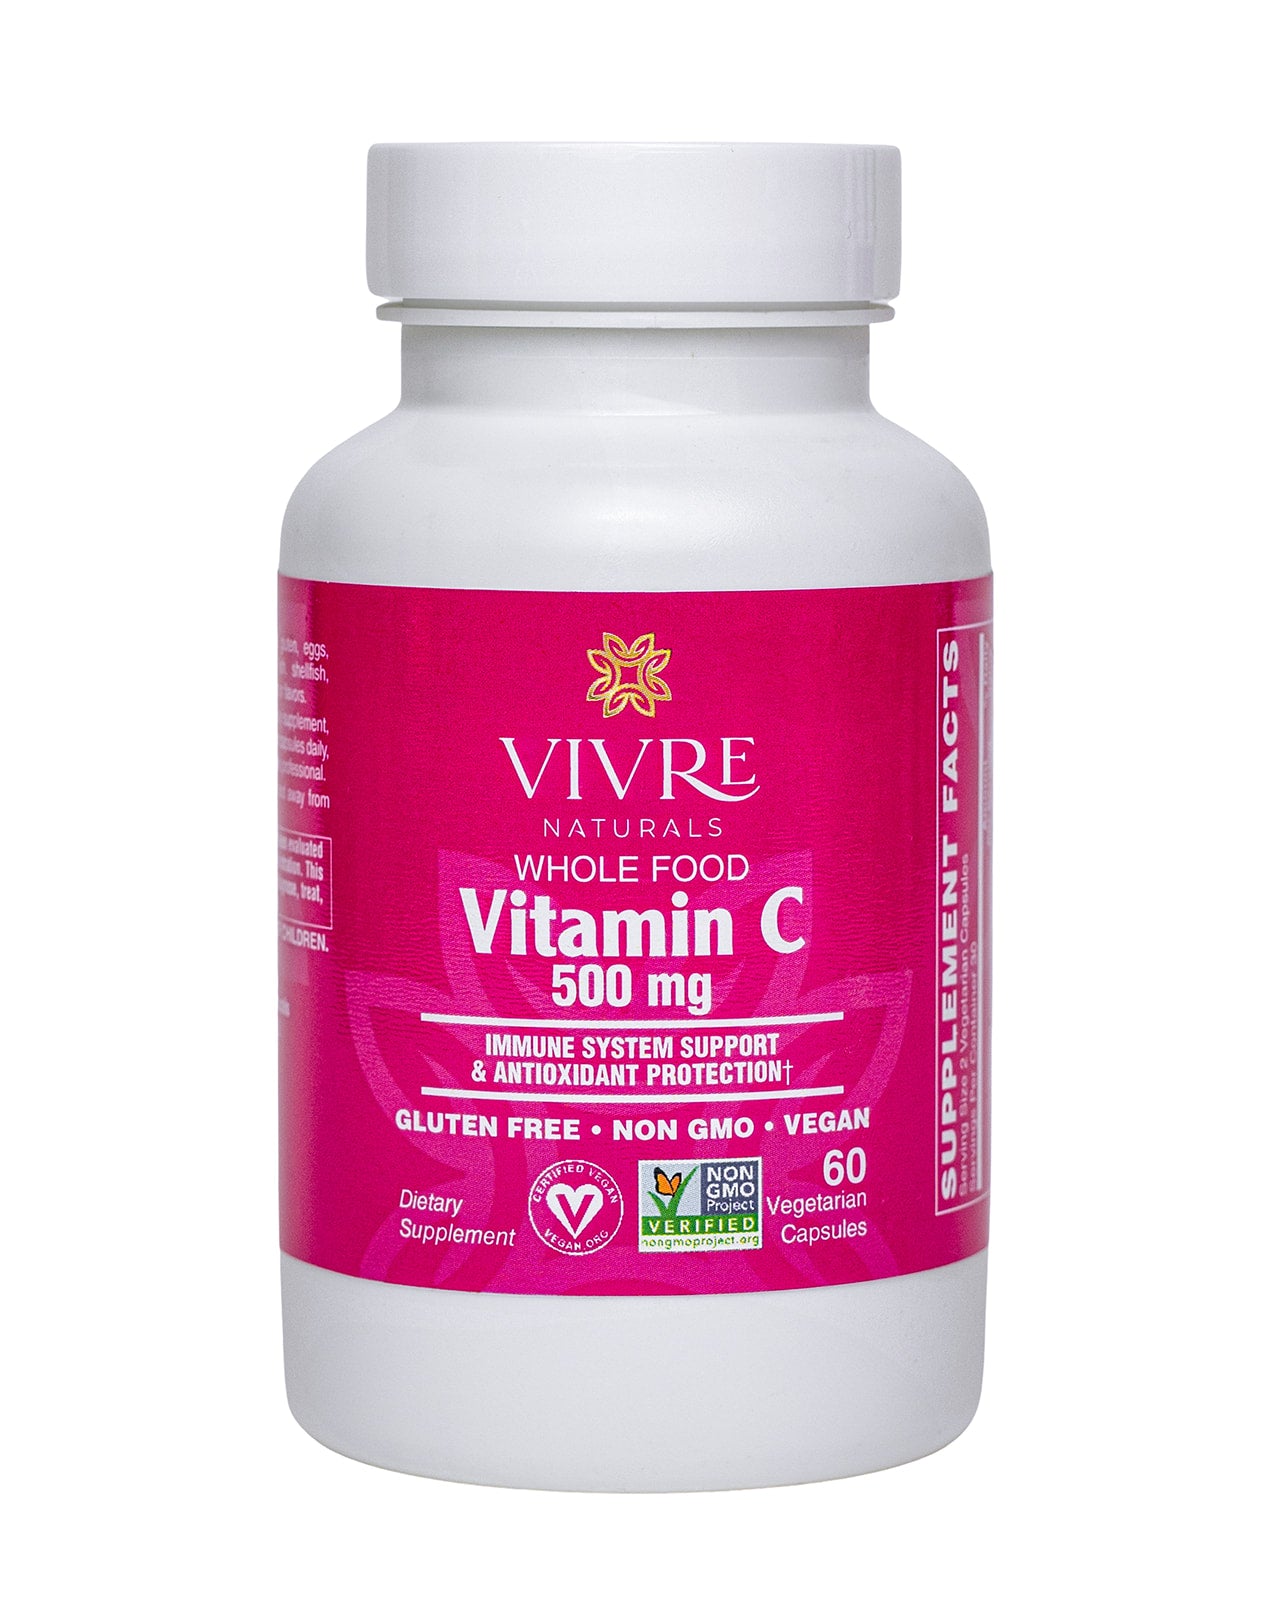 Whole Food Vitamin C 500 mg